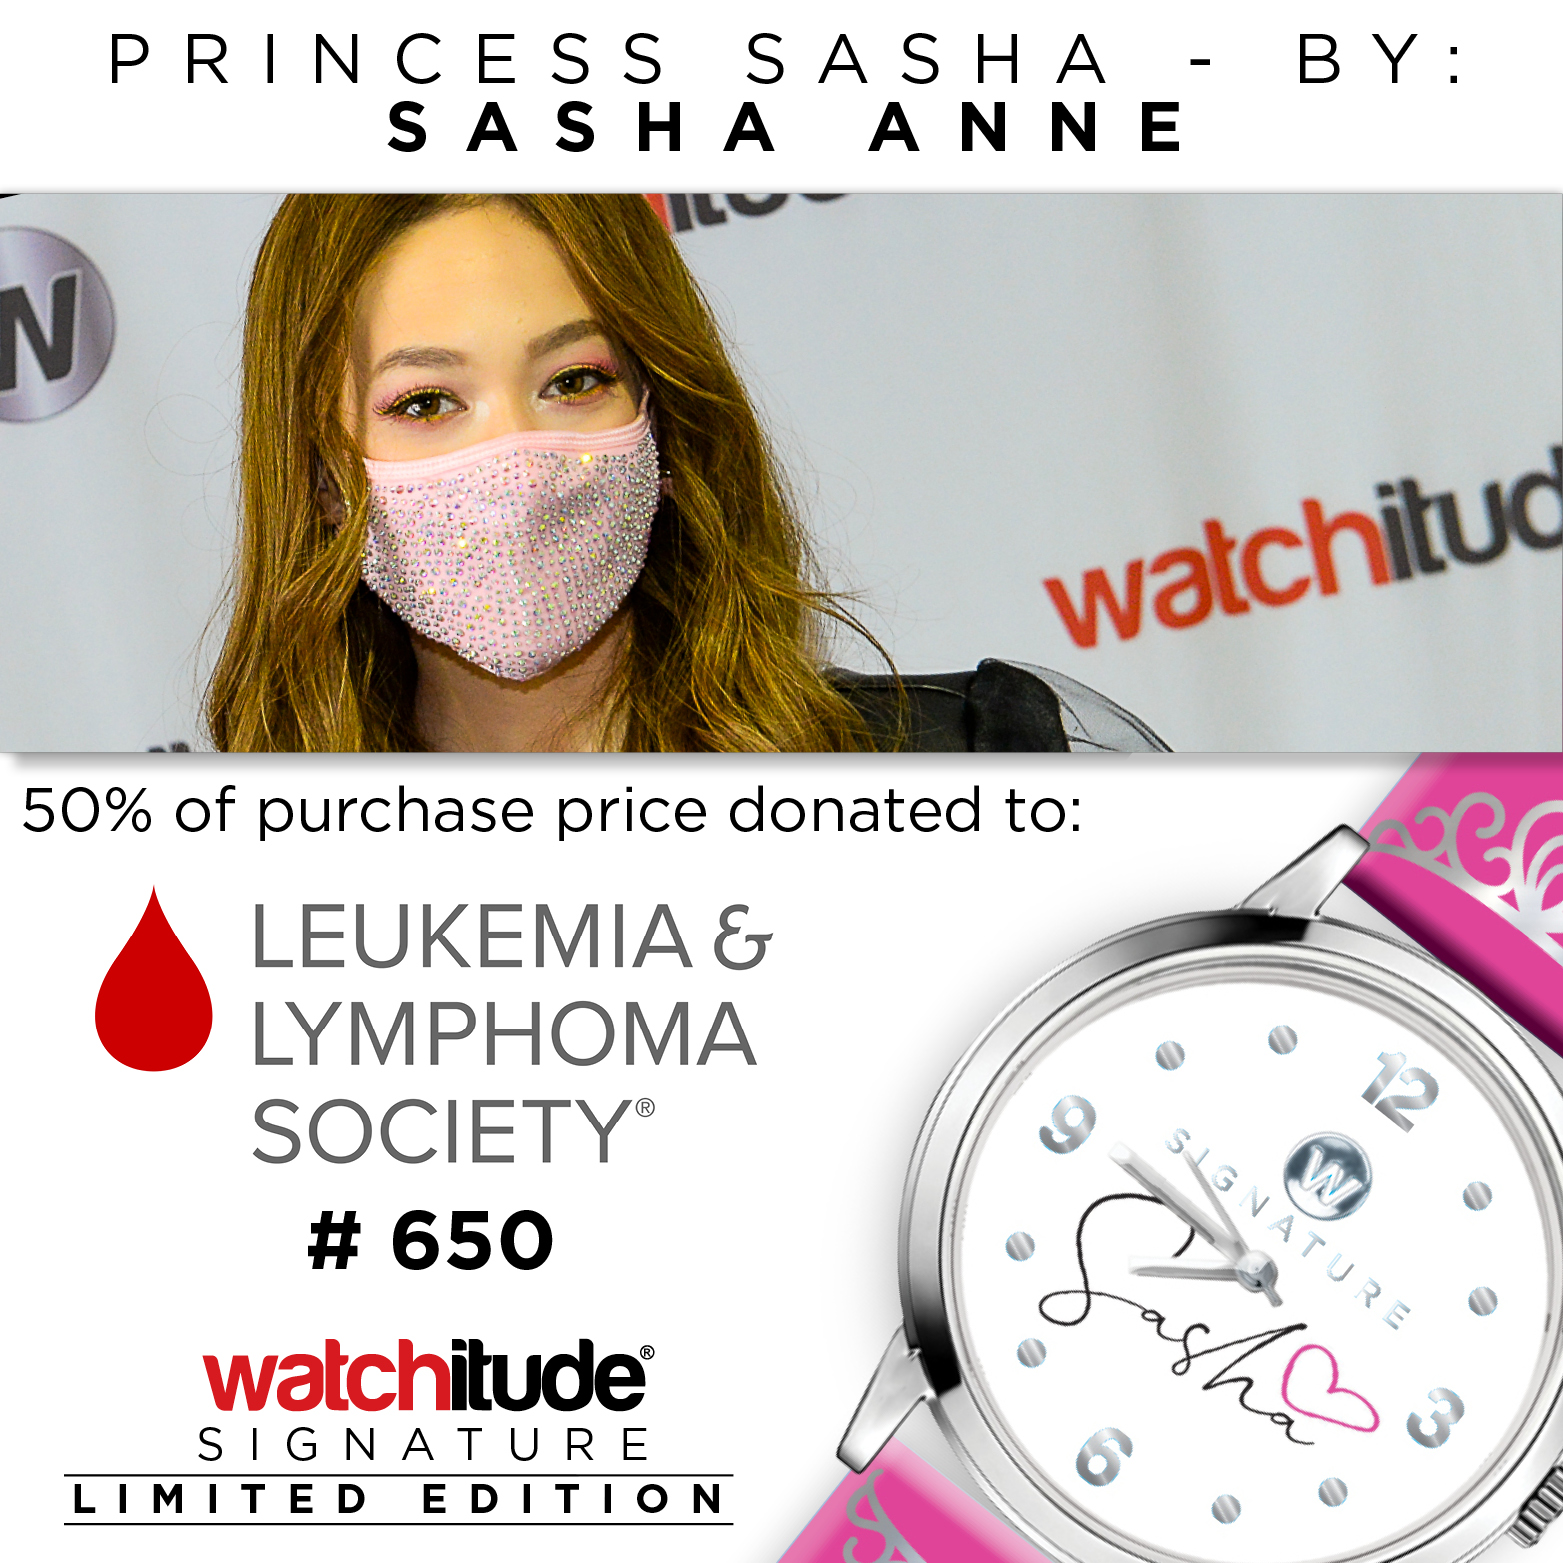 Princess Sasha - Sasha Anne Signature watch